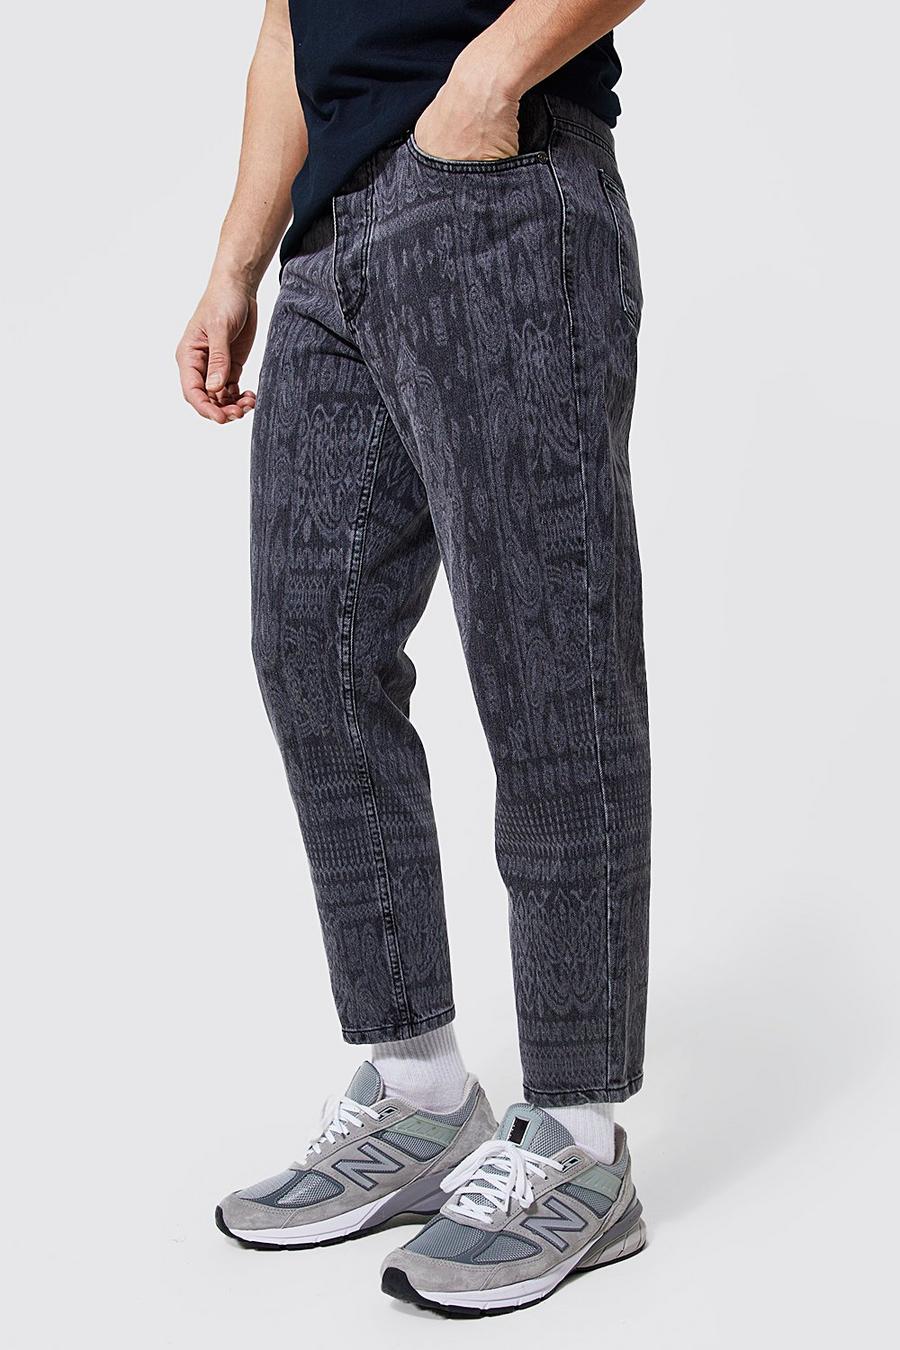 אפור ביניים gris ג'ינס בגזרת קרסול צרה מבד קשיח עם דוגמת בנדנה